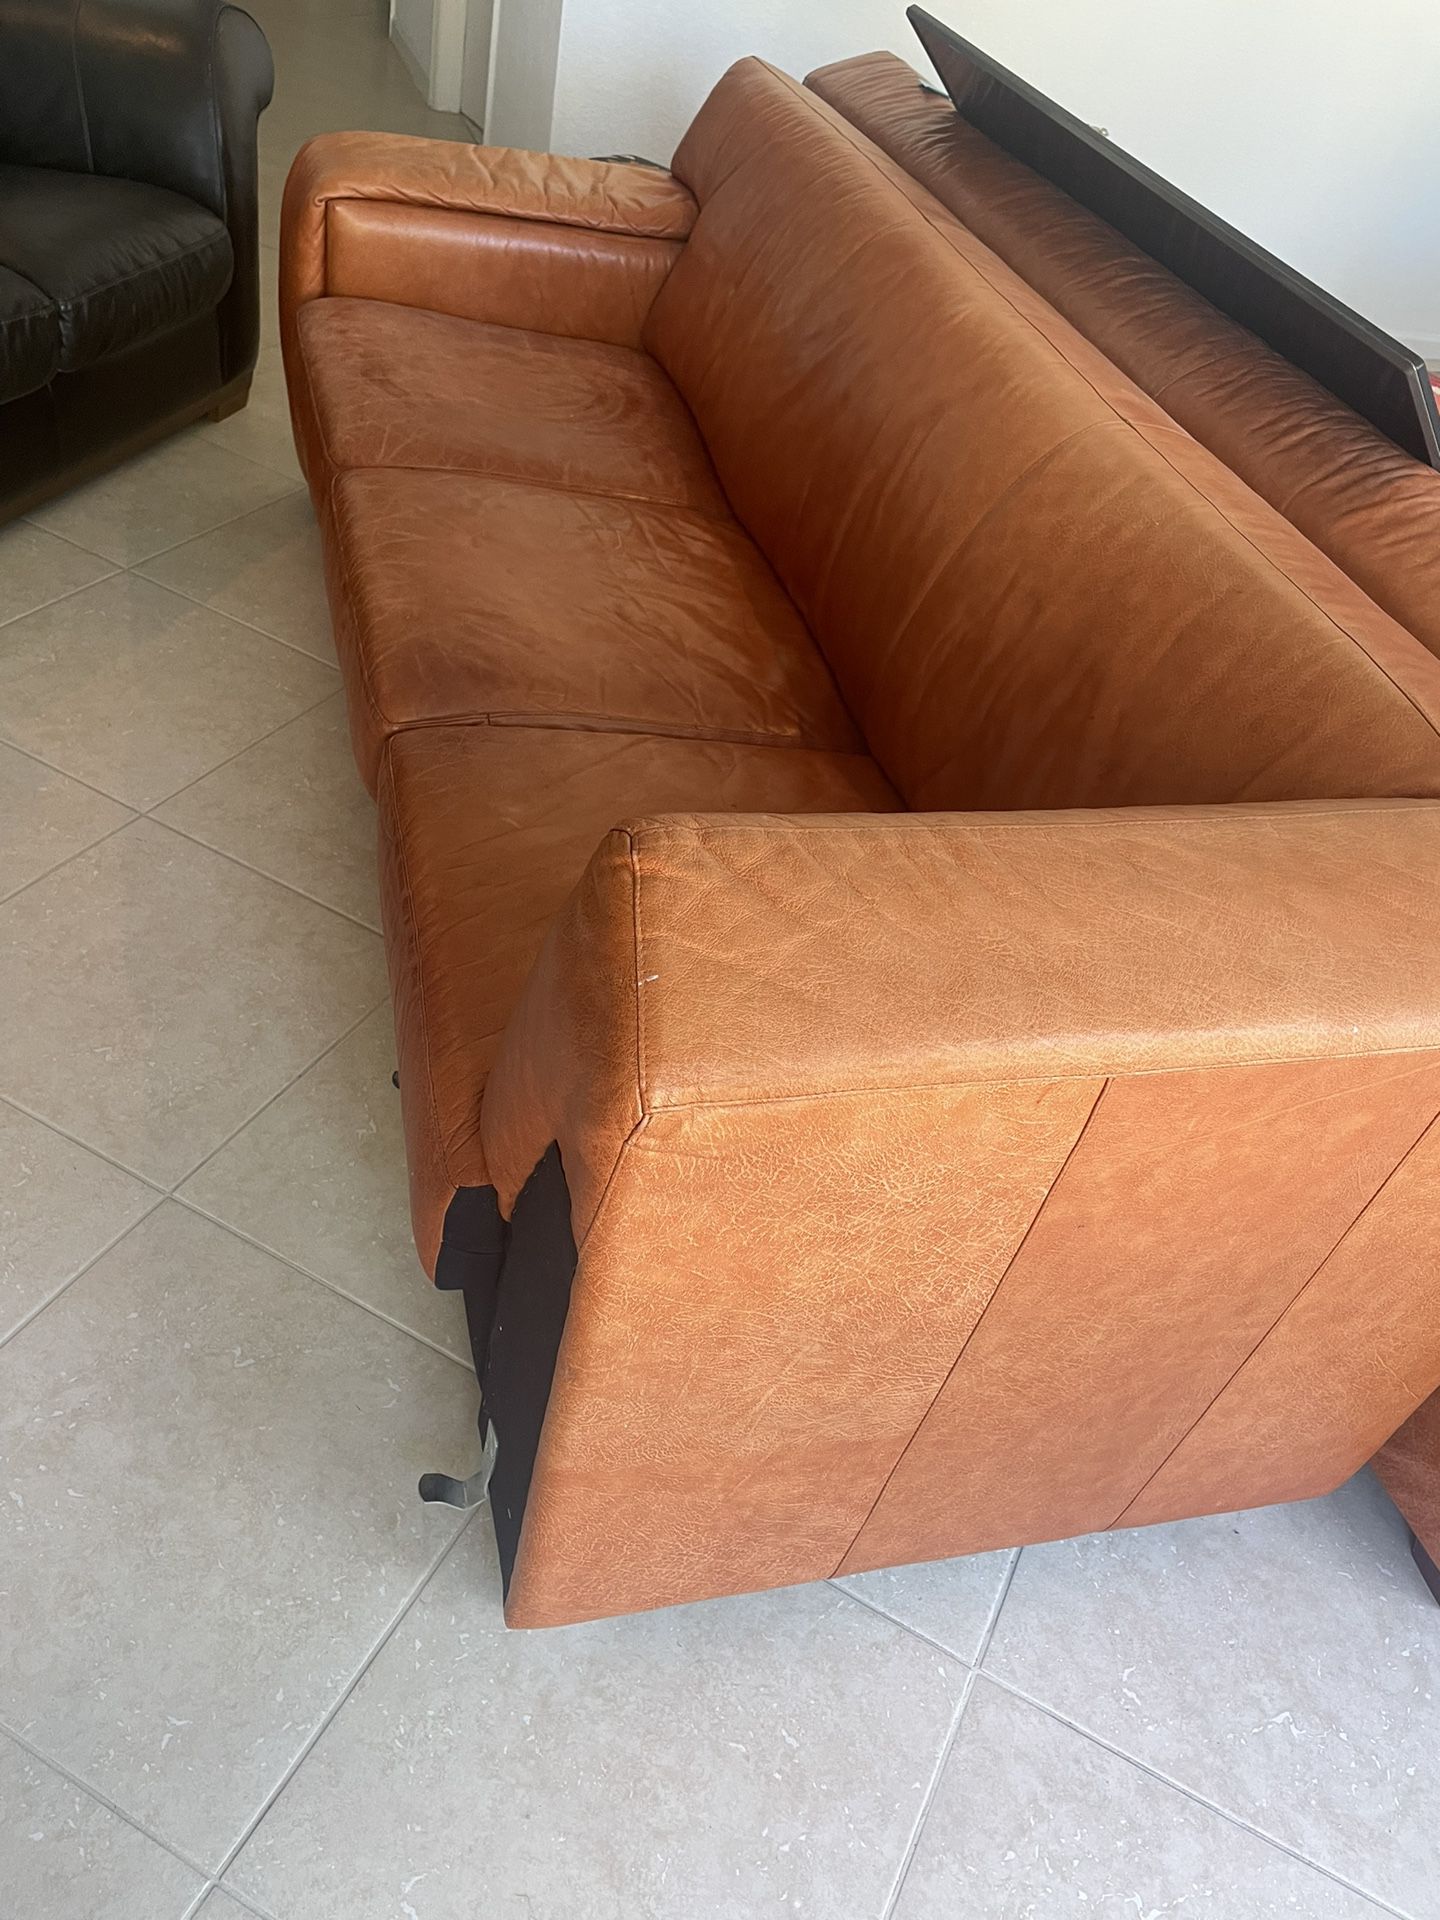 Orange Leather Couch - U Shape